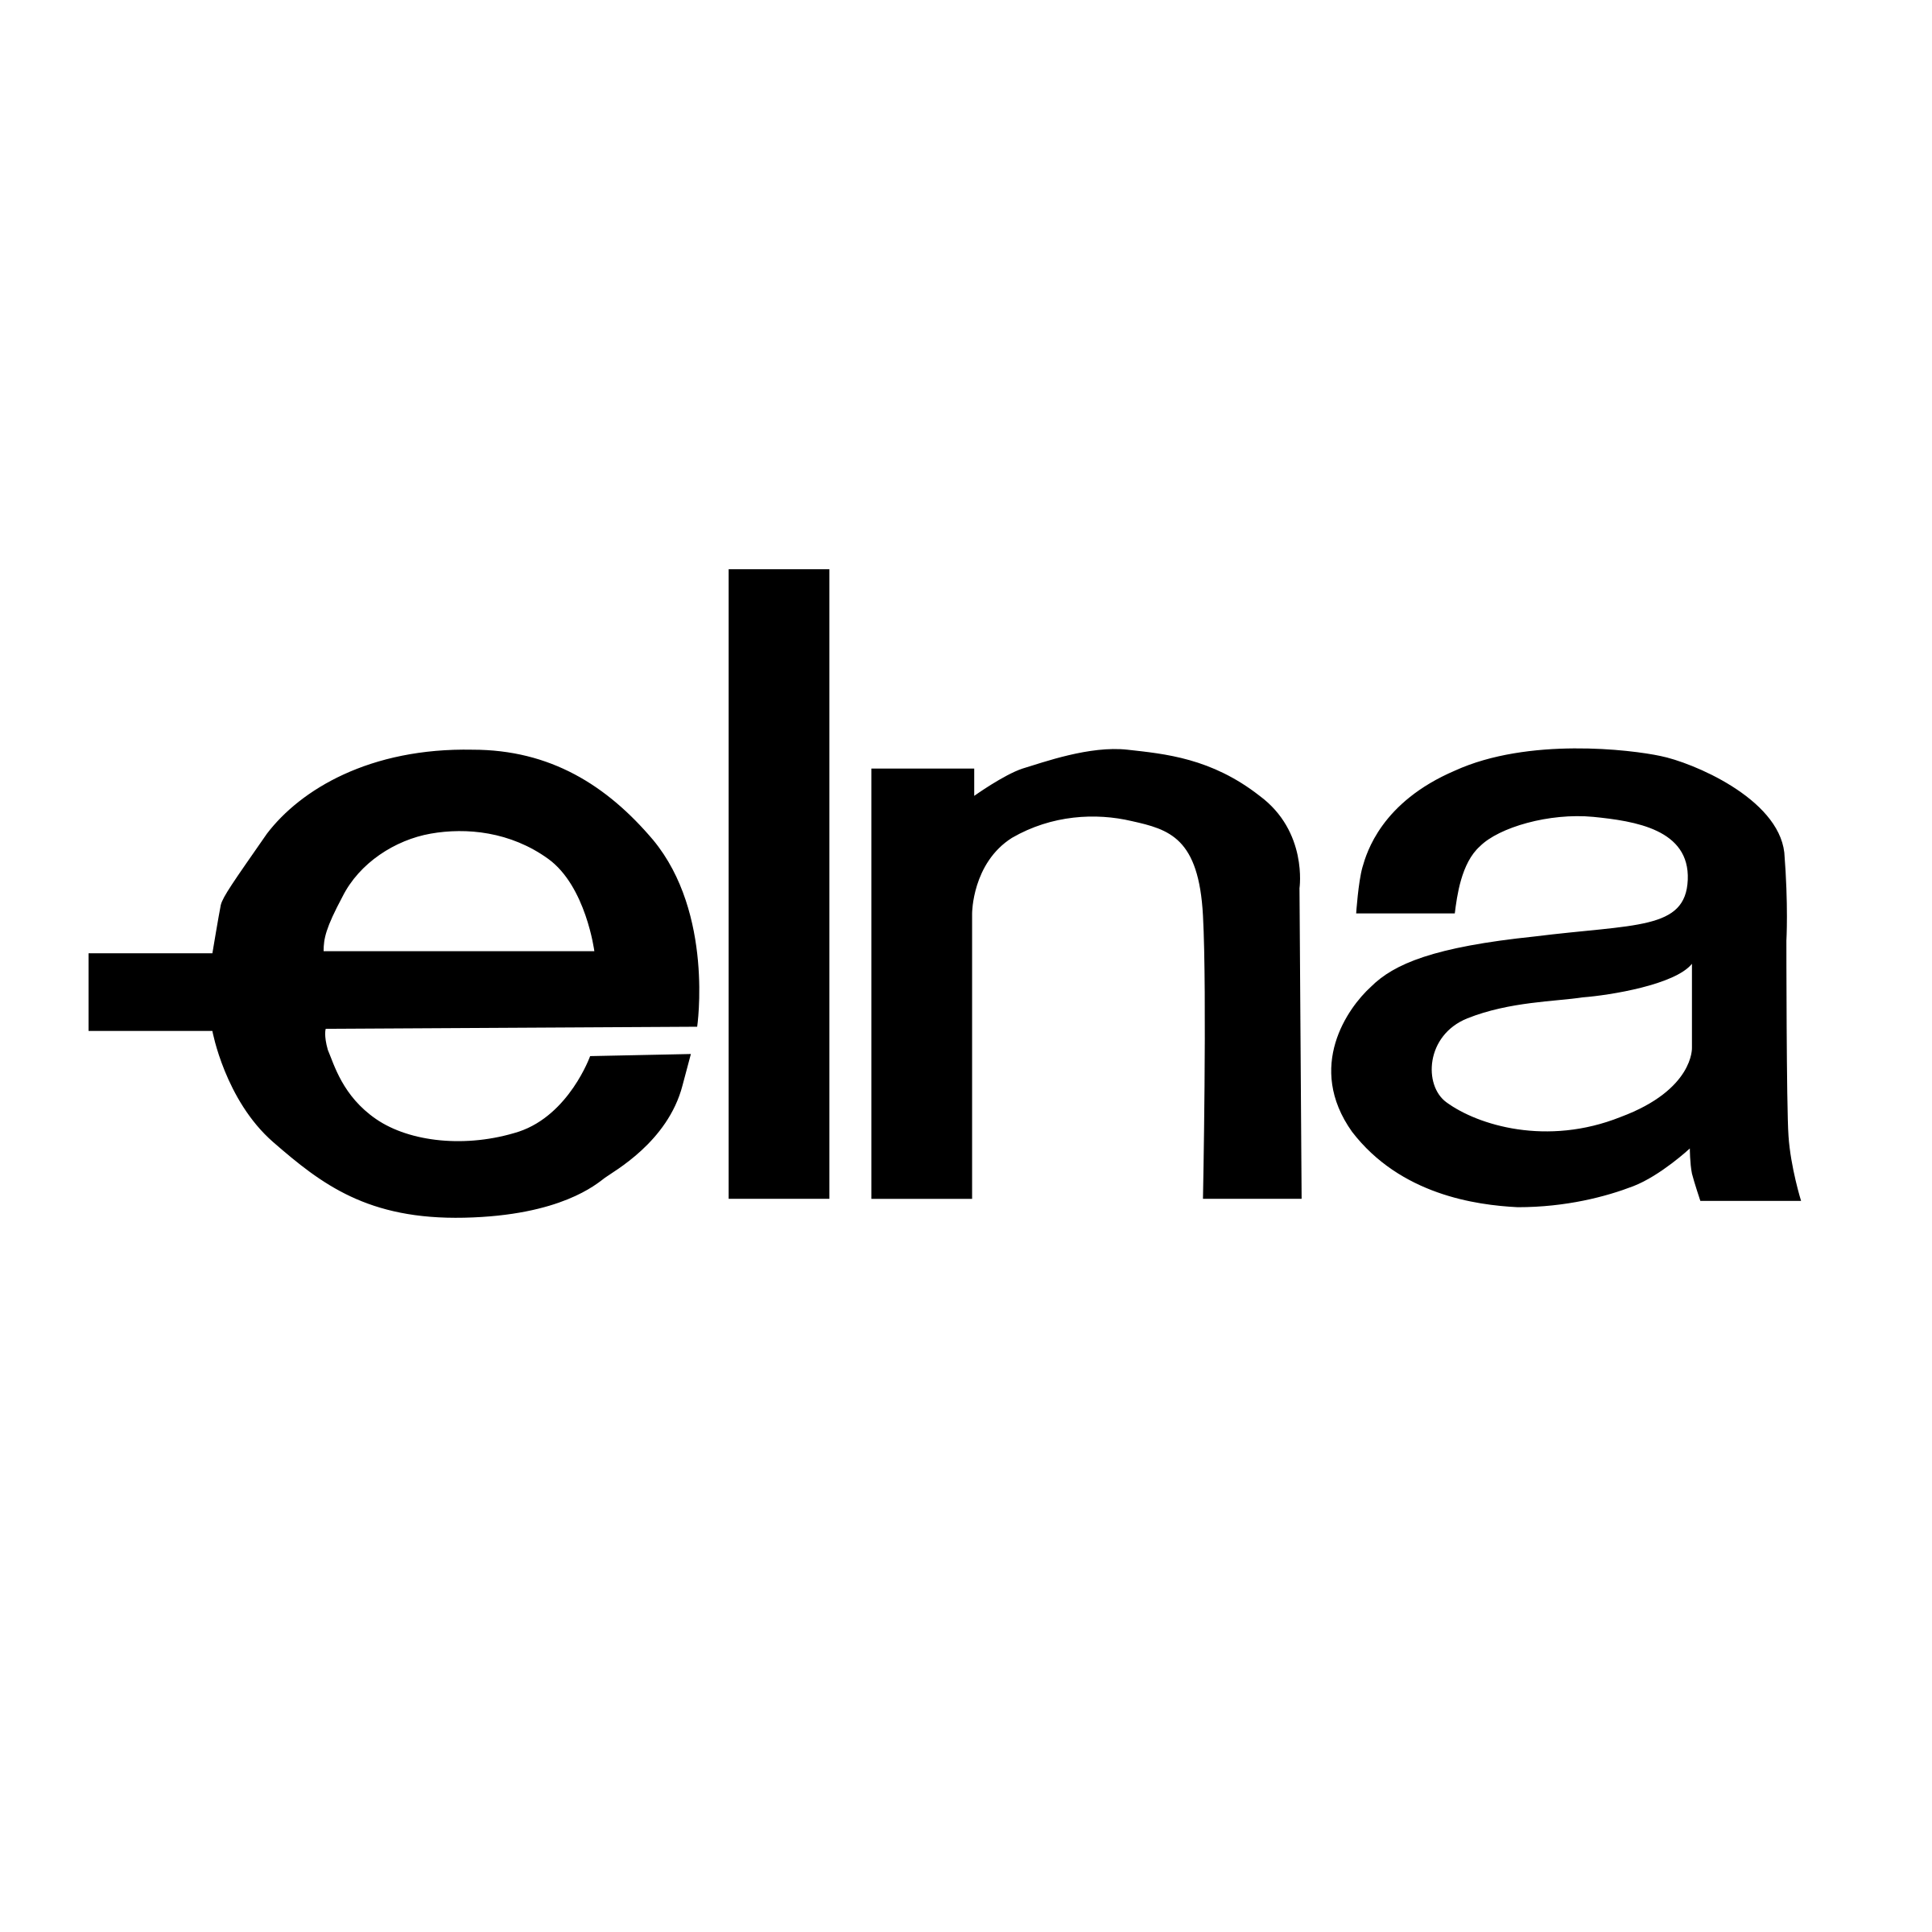 Elna Logo - Elna Logo PNG Transparent & SVG Vector